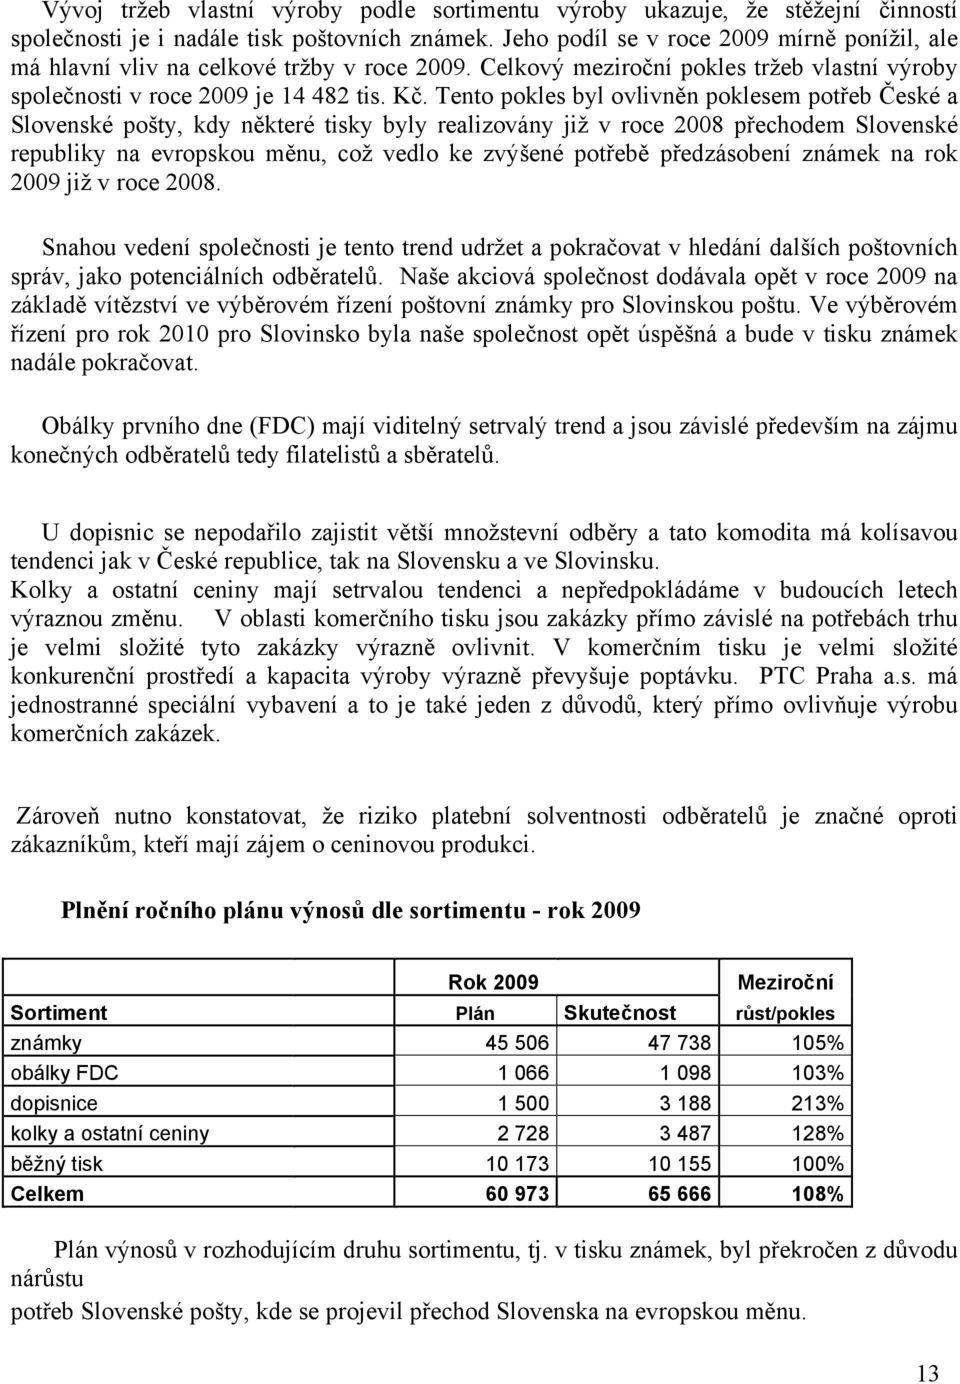 Tento pokles byl ovlivněn poklesem potřeb České a Slovenské pošty, kdy některé tisky byly realizovány již v roce 2008 přechodem Slovenské republiky na evropskou měnu, což vedlo ke zvýšené potřebě